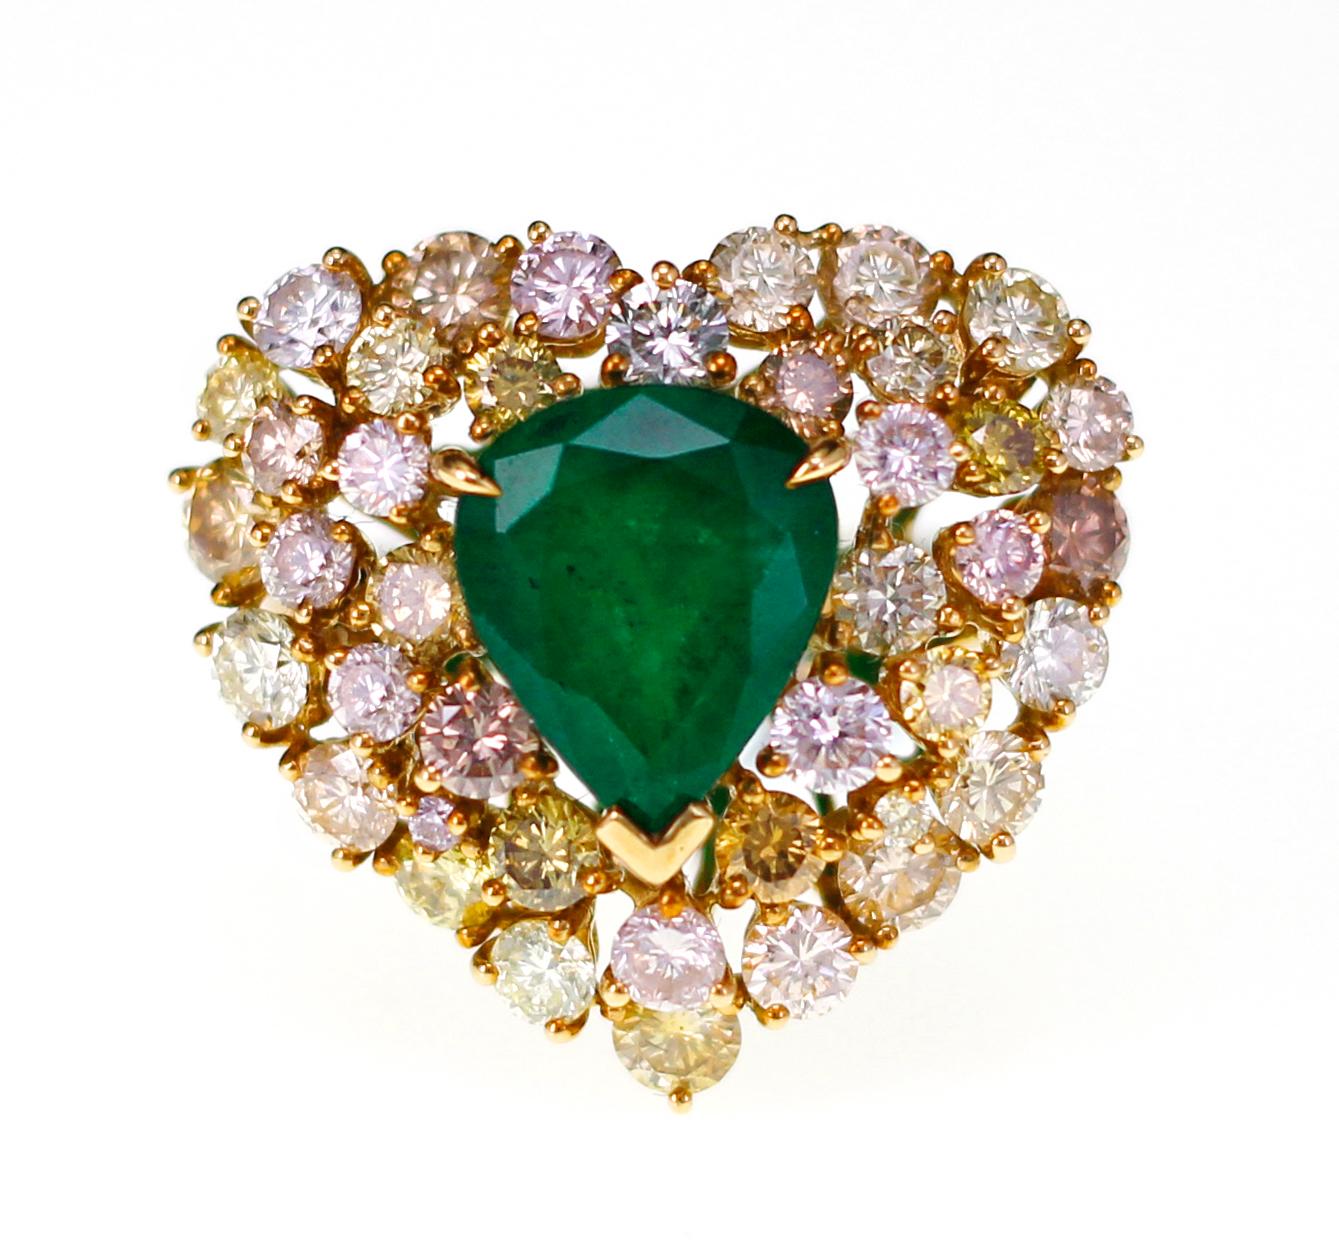 2.8 Karat lebendiger grüner Smaragd mit 2,77 Karat natürlichem rosa und gelbem Diamantring. 